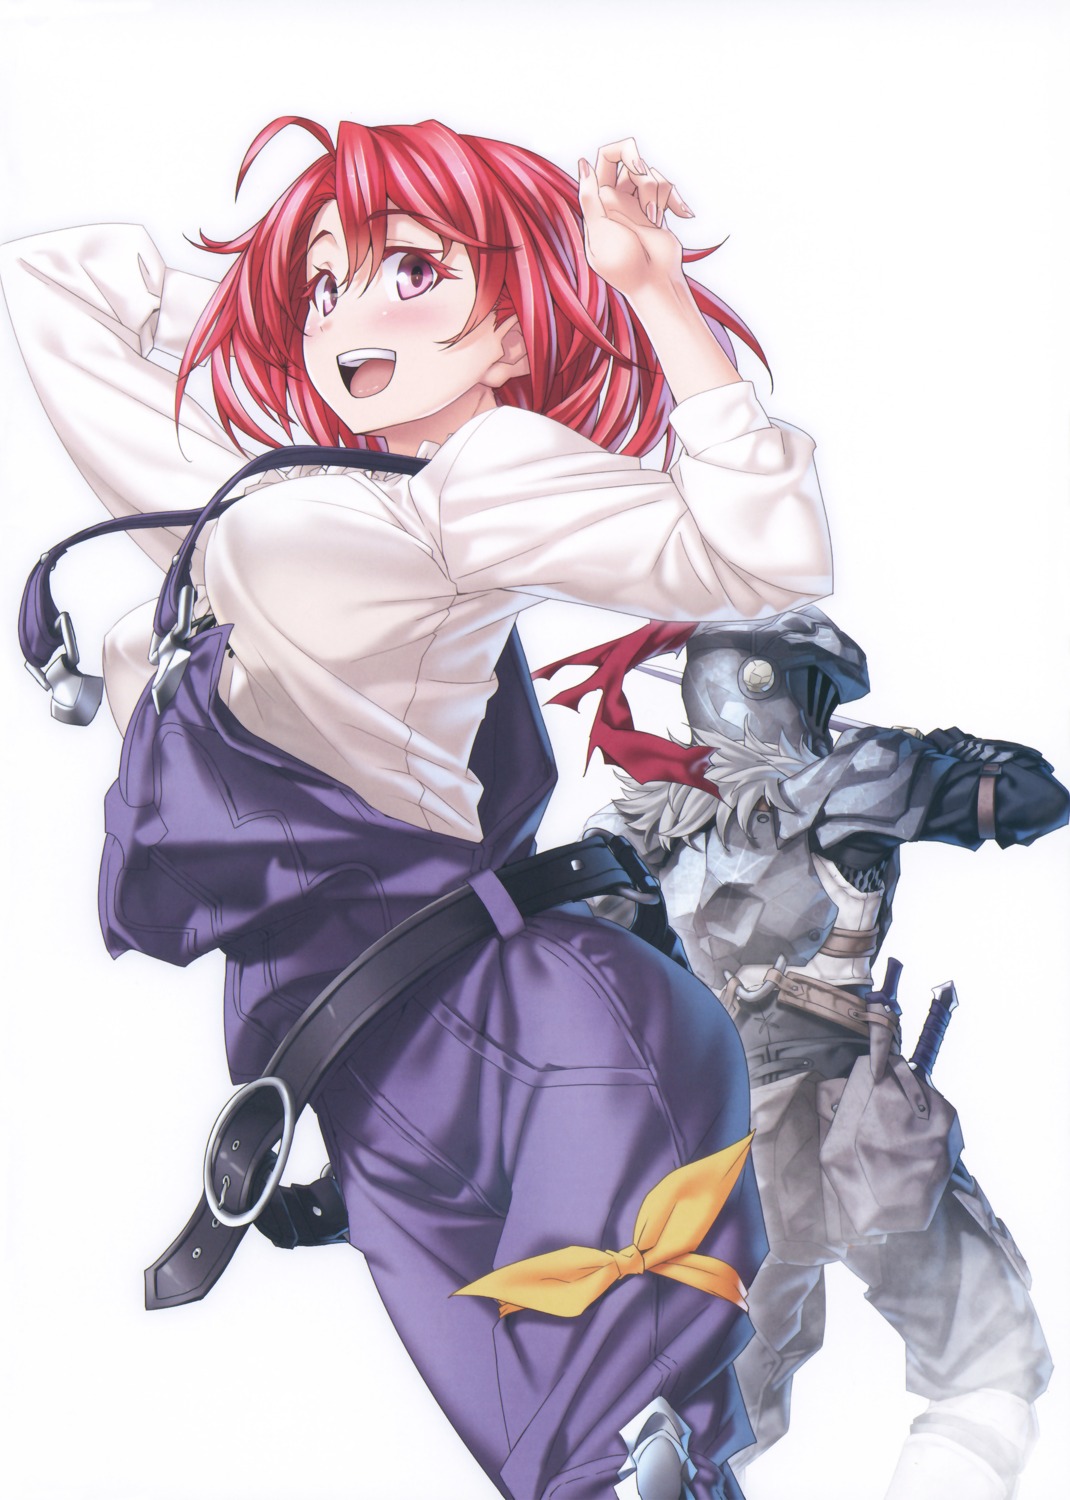 armor cow_girl goblin_slayer goblin_slayer_(character) kannatsuki_noboru overalls sword